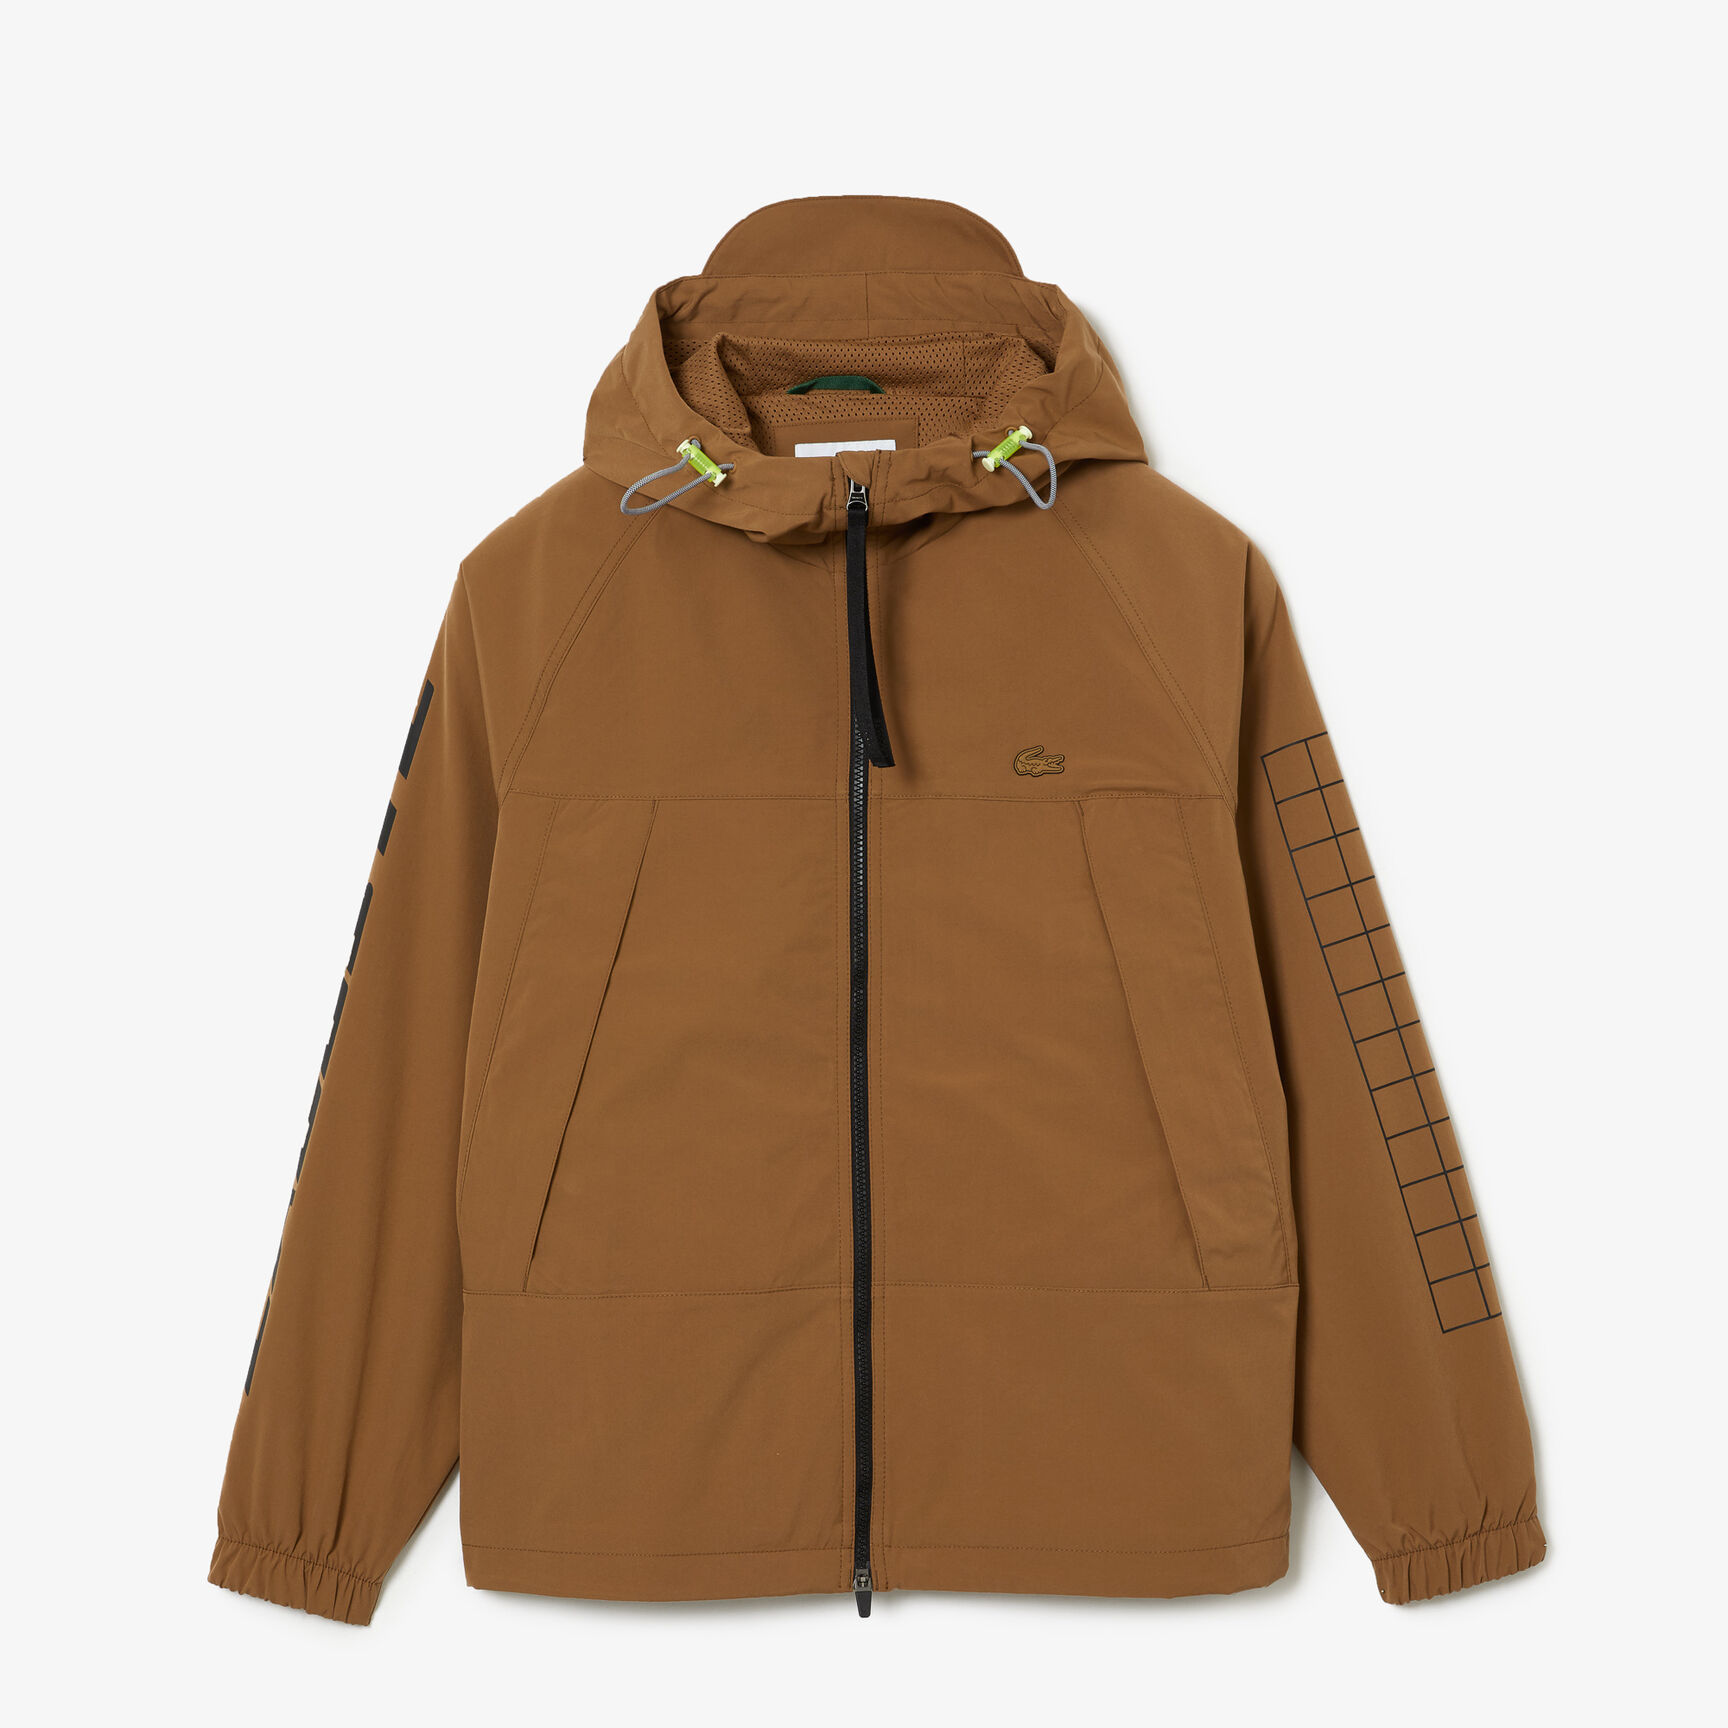 Buy Men's Lacoste Branded Twill Jacket | Lacoste EG